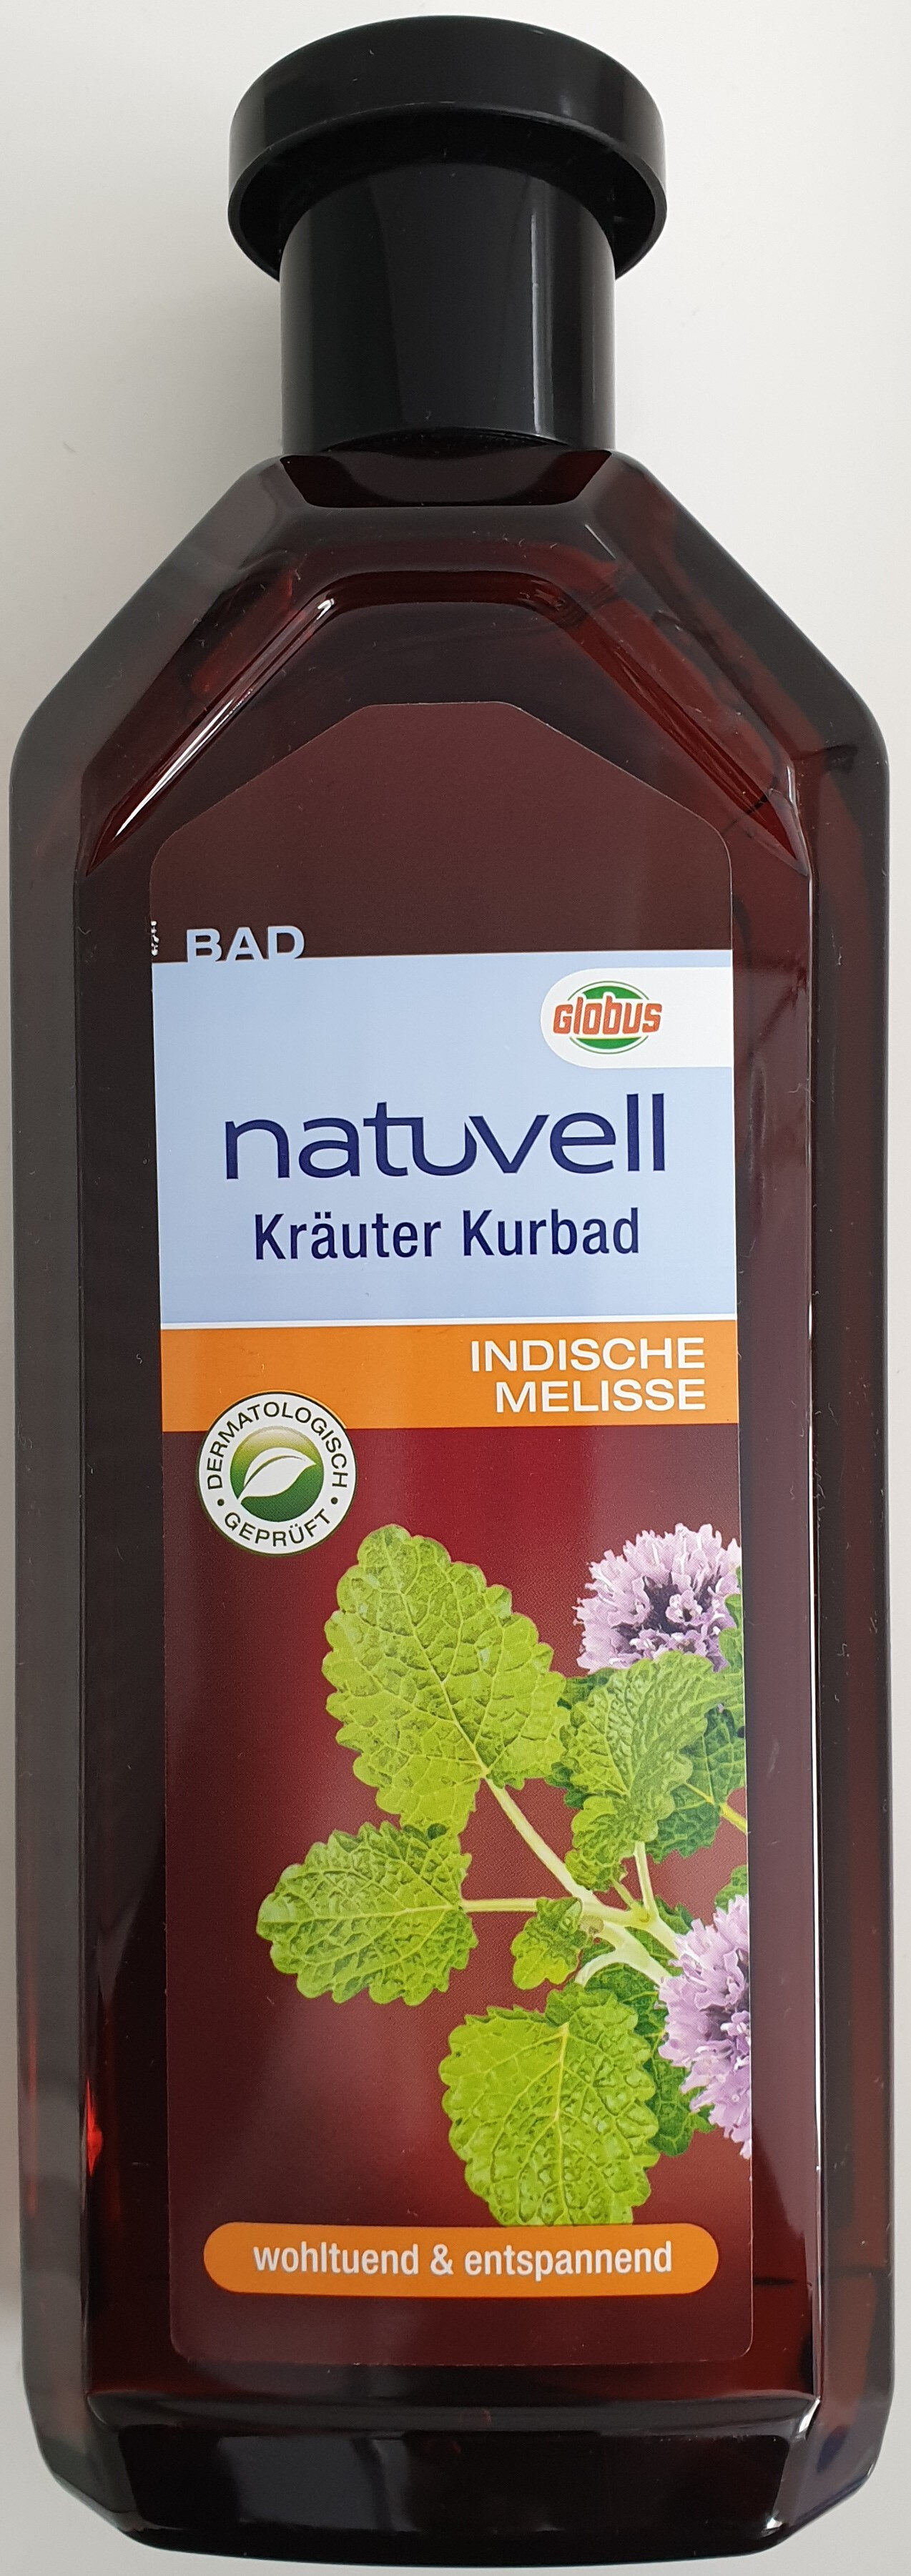 Kräuter Kurbad - Product - de